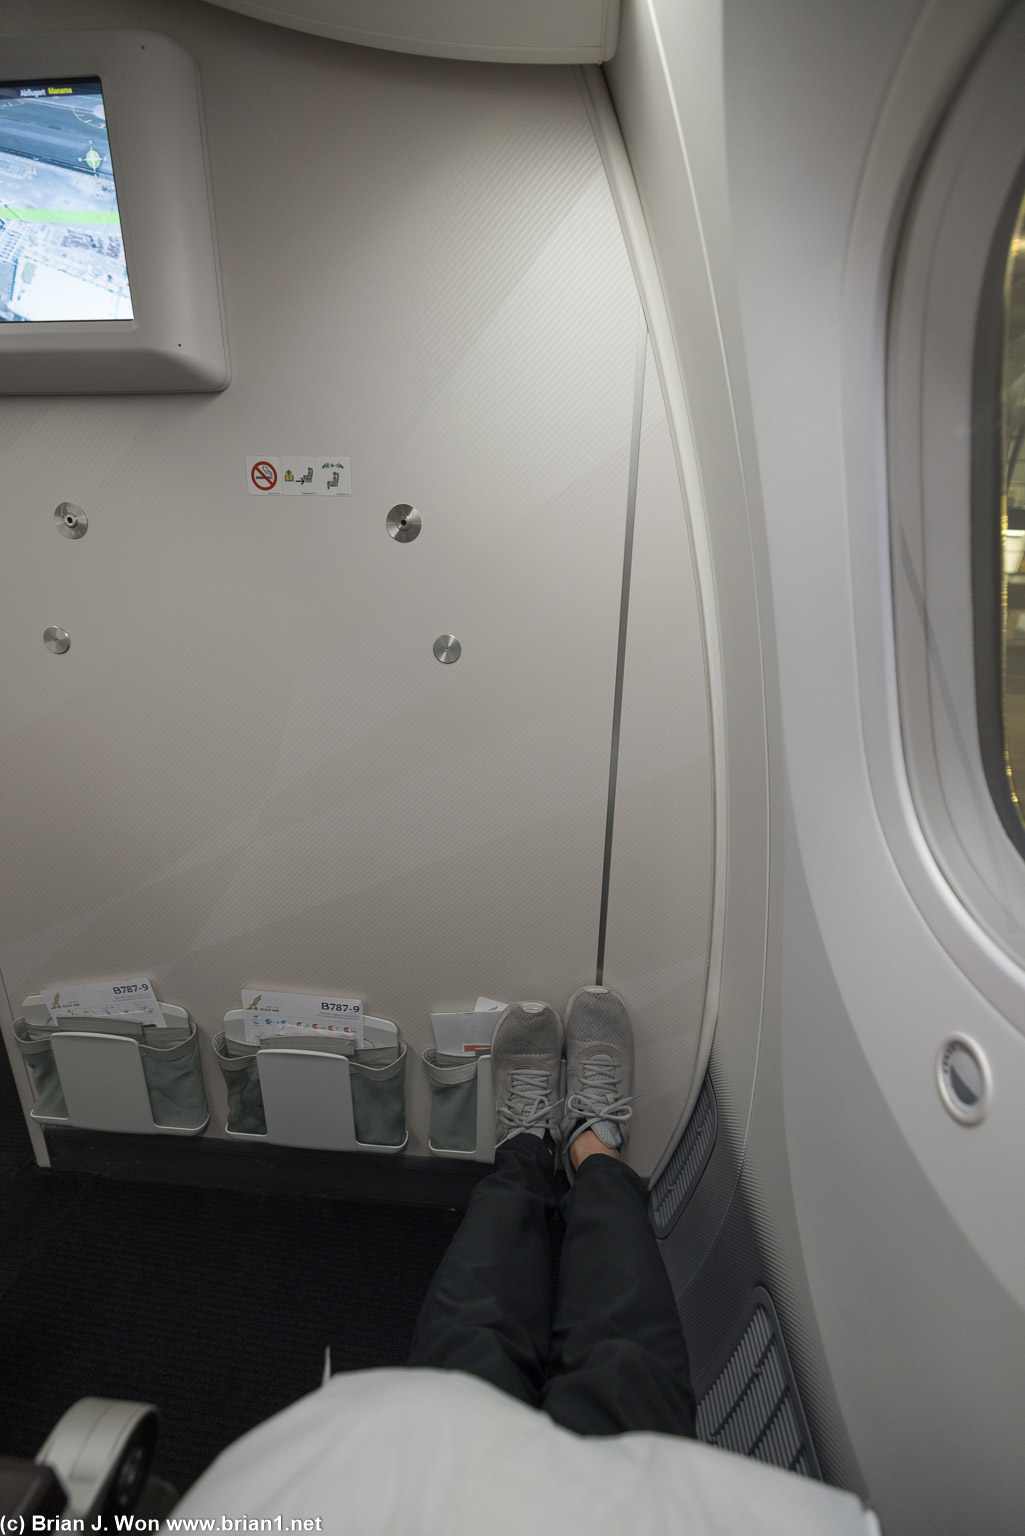 Bulkhead on a Gulf Air 787-9 is very spacious.